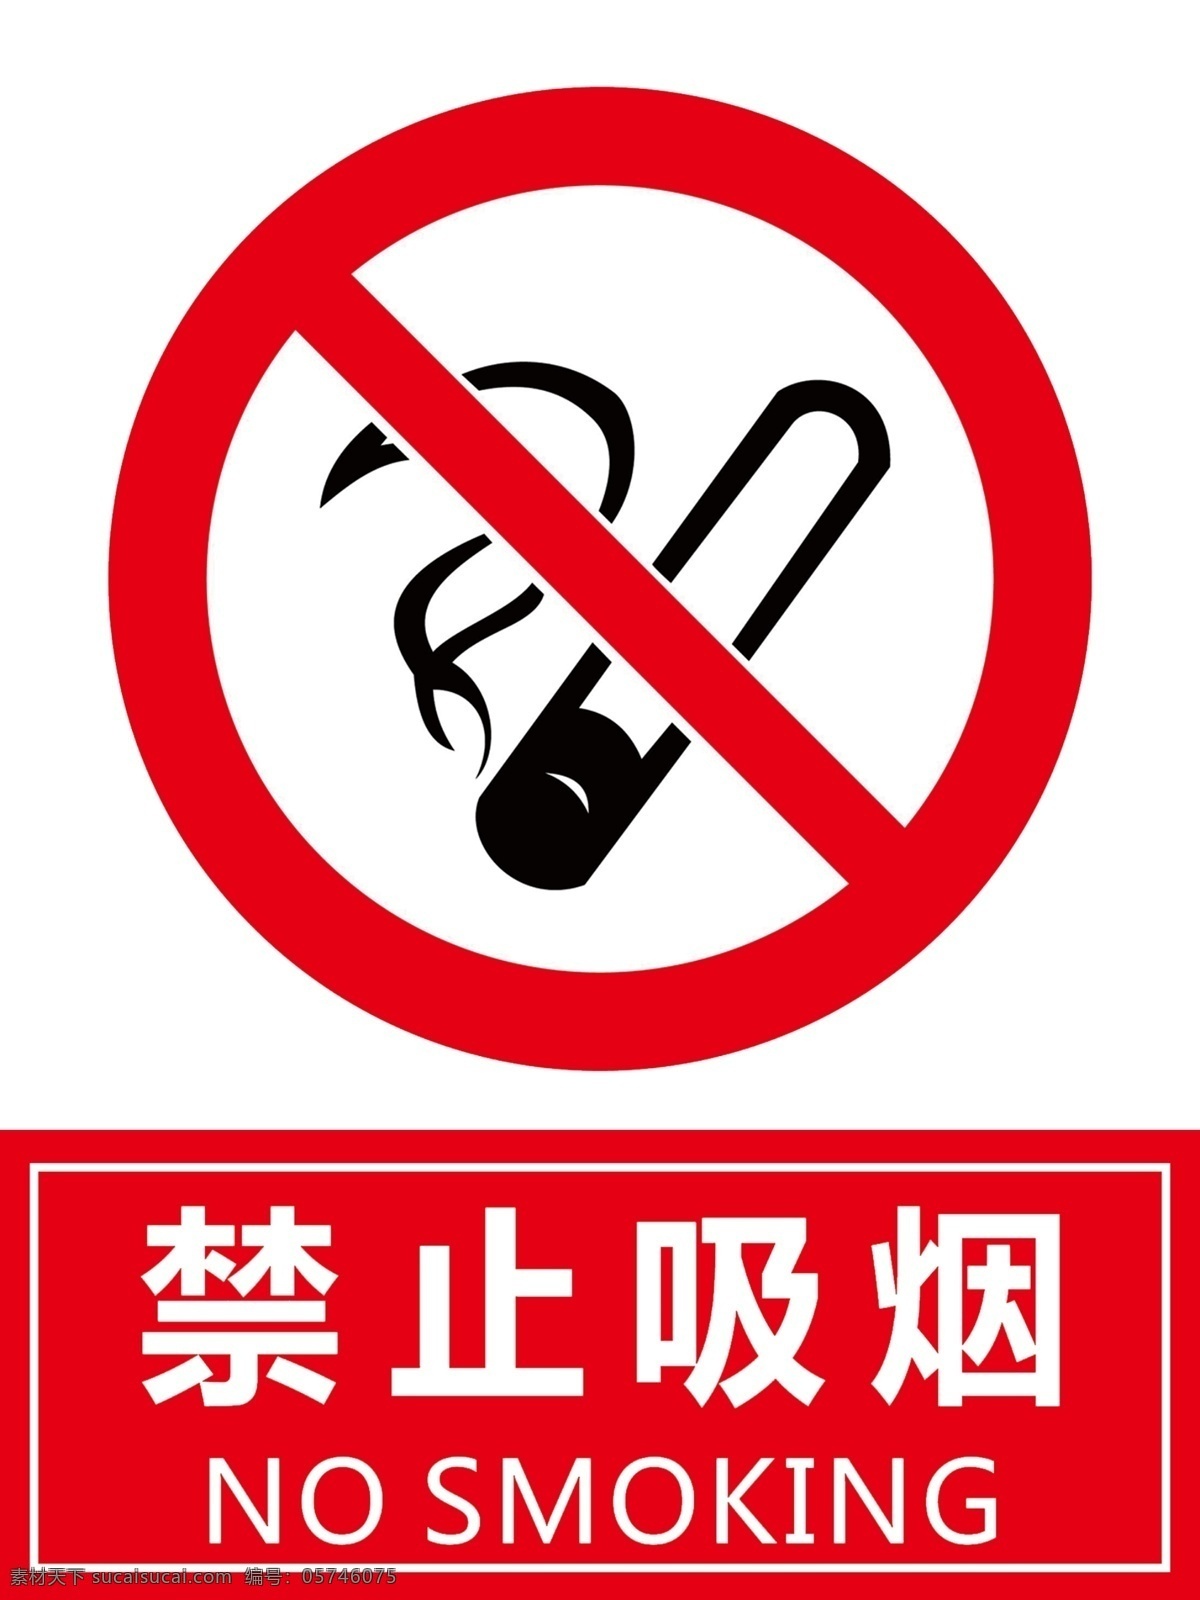 禁止吸烟 禁止 吸烟 标牌 禁烟